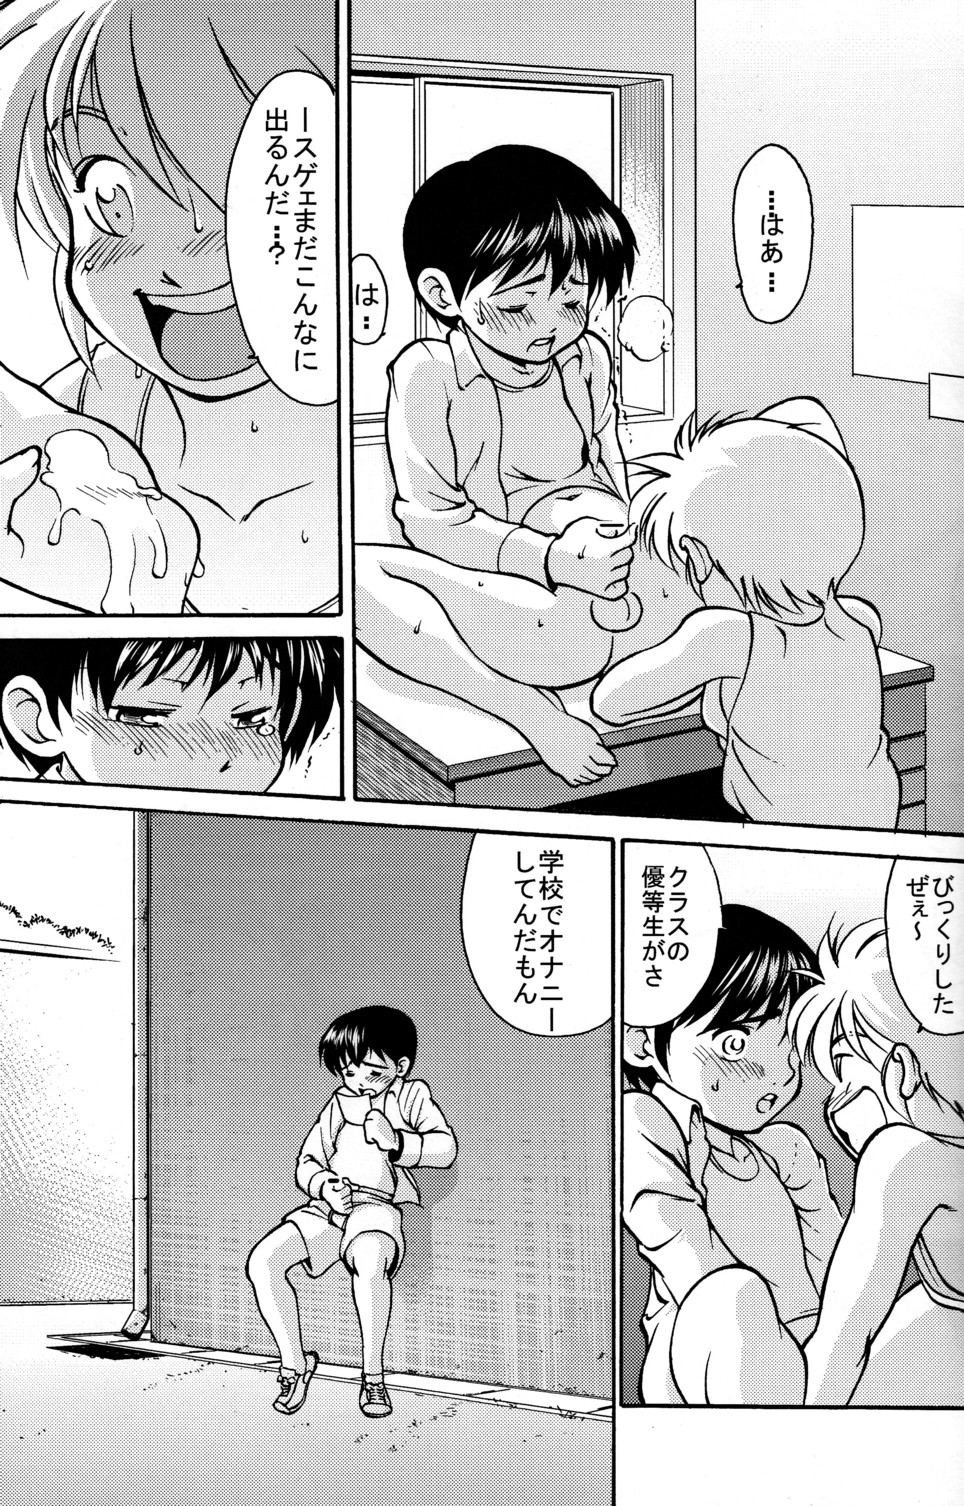 [Yuuji] Boys Life 1 page 7 full